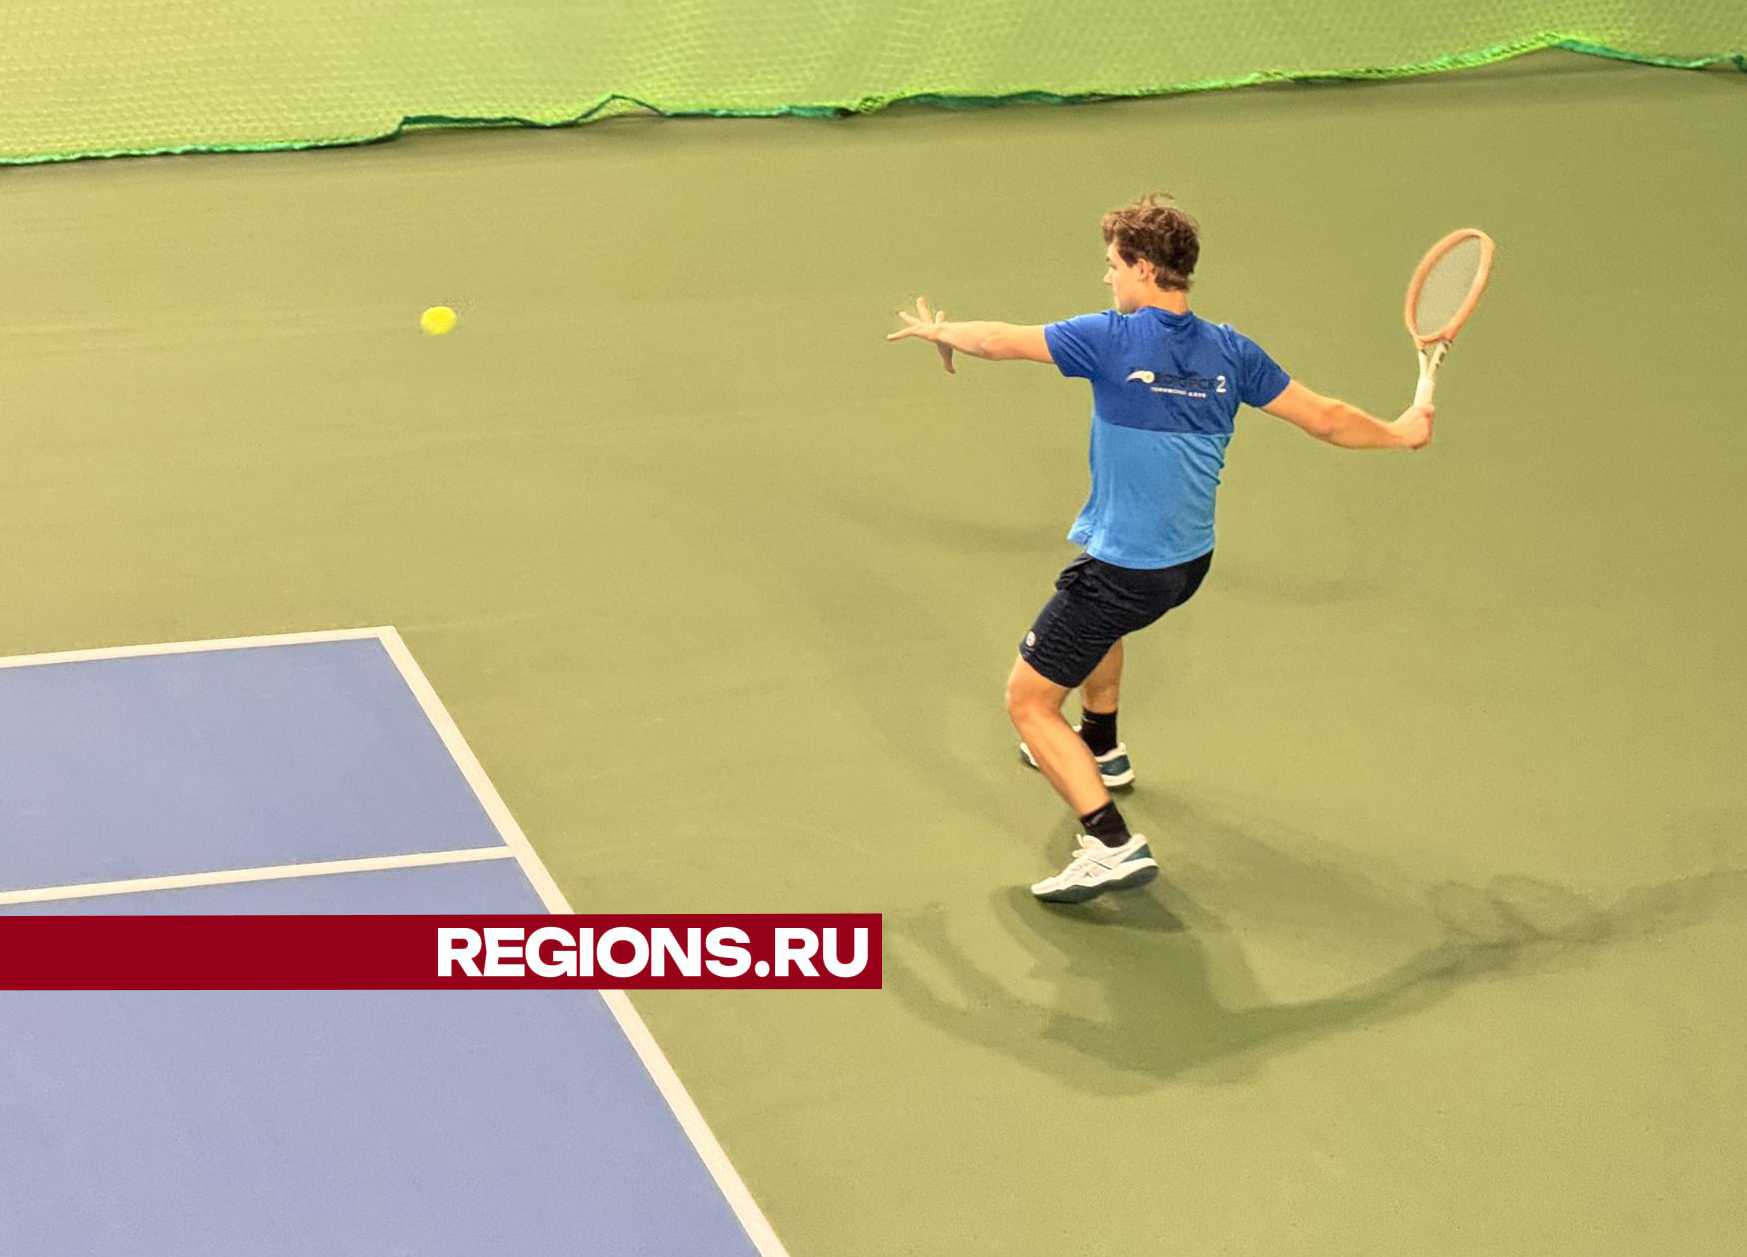 Мастер спорта международного класса Игорь Куницын провел занятие для детей в новом теннисном центре